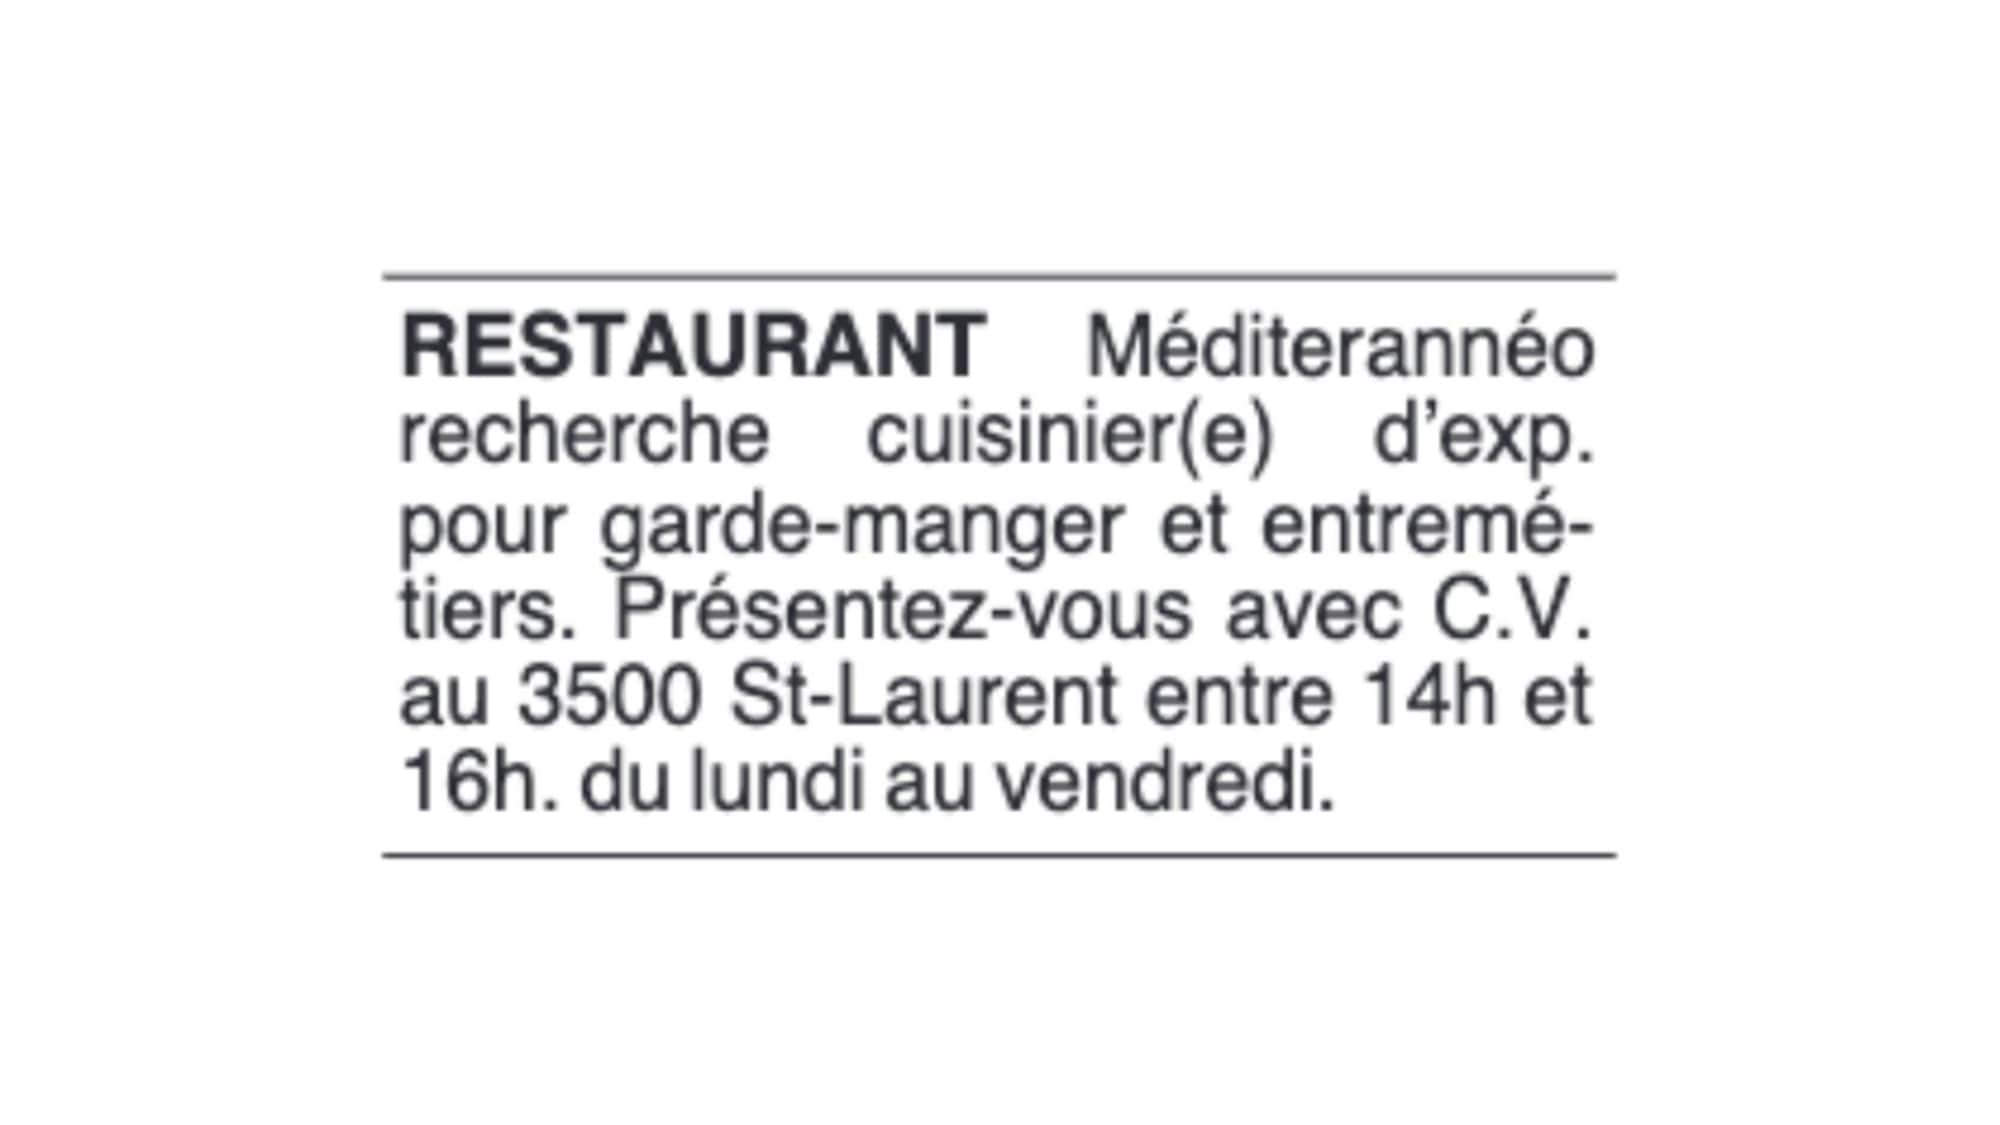 Sur la petite annonce, on peut lire : Restaurant Méditerranéo recherche cuisinier d'expérience pour garde-manger et entremétiers. Présentez-vous avec CV au 3500 St-Laurent entre 14h et 16h. Du lundi au vendredi.